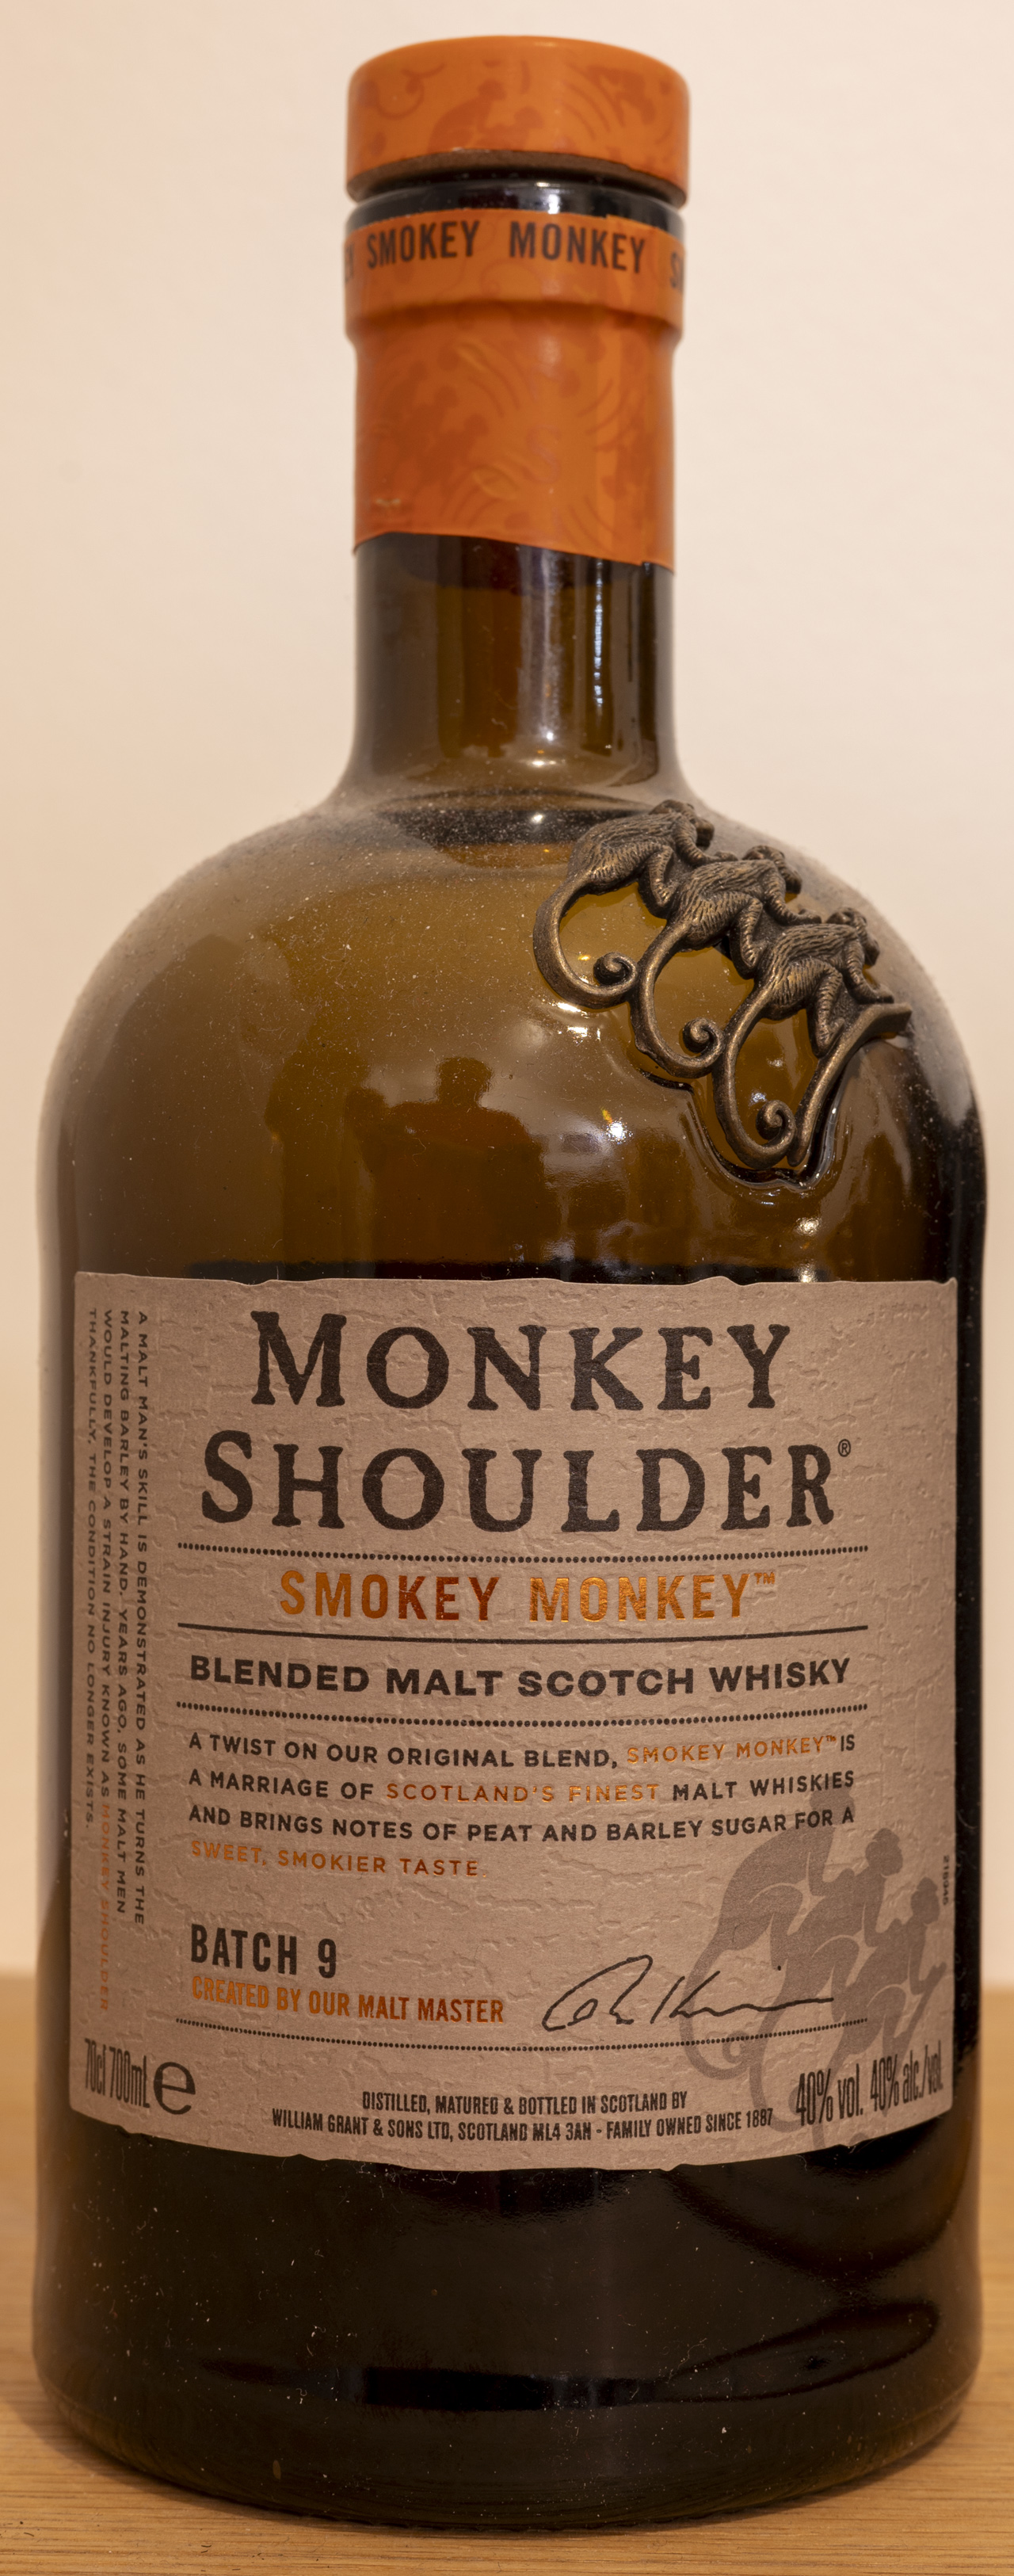 Billede: Z62_7287 - Smoky Monkey - bottle front.jpg